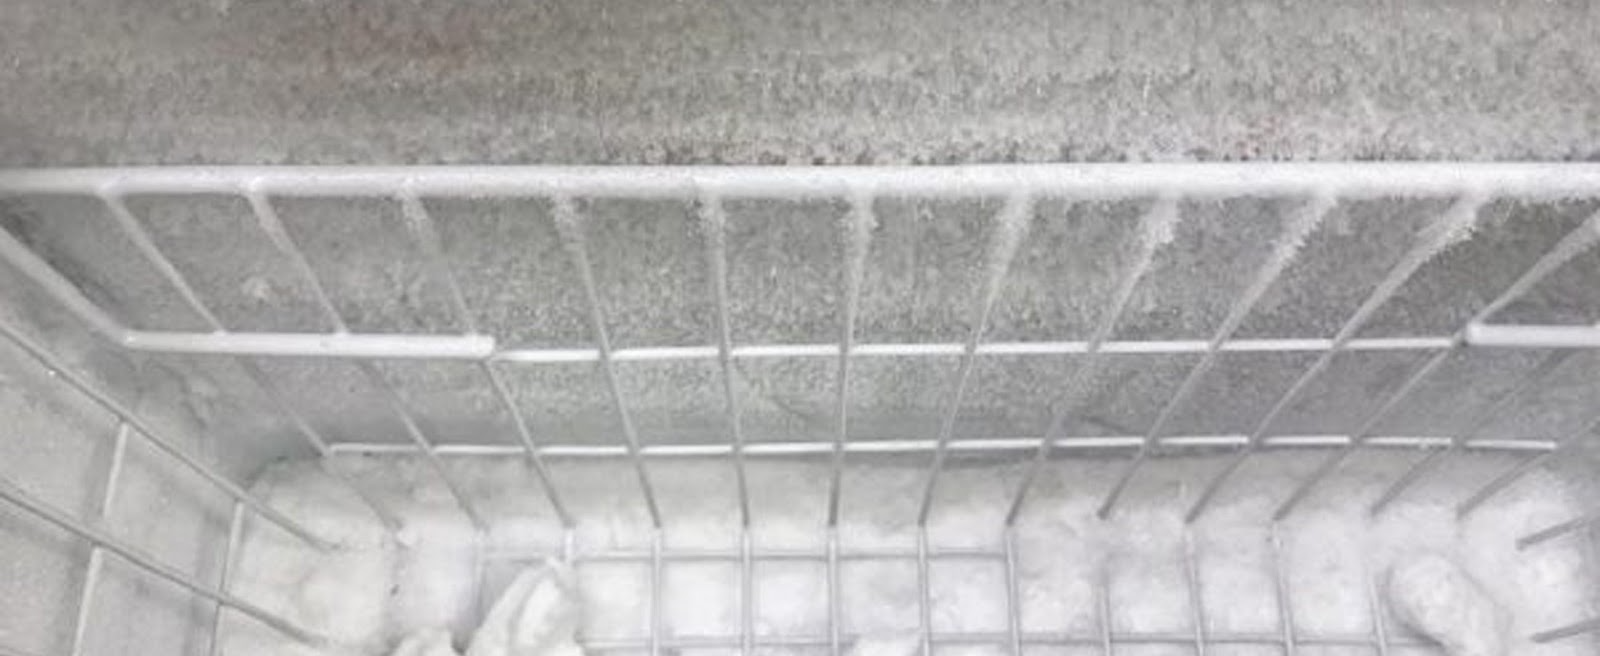 Hiện tượng tủ mát đóng tuyết làm cản hơi lạnh lưu thông